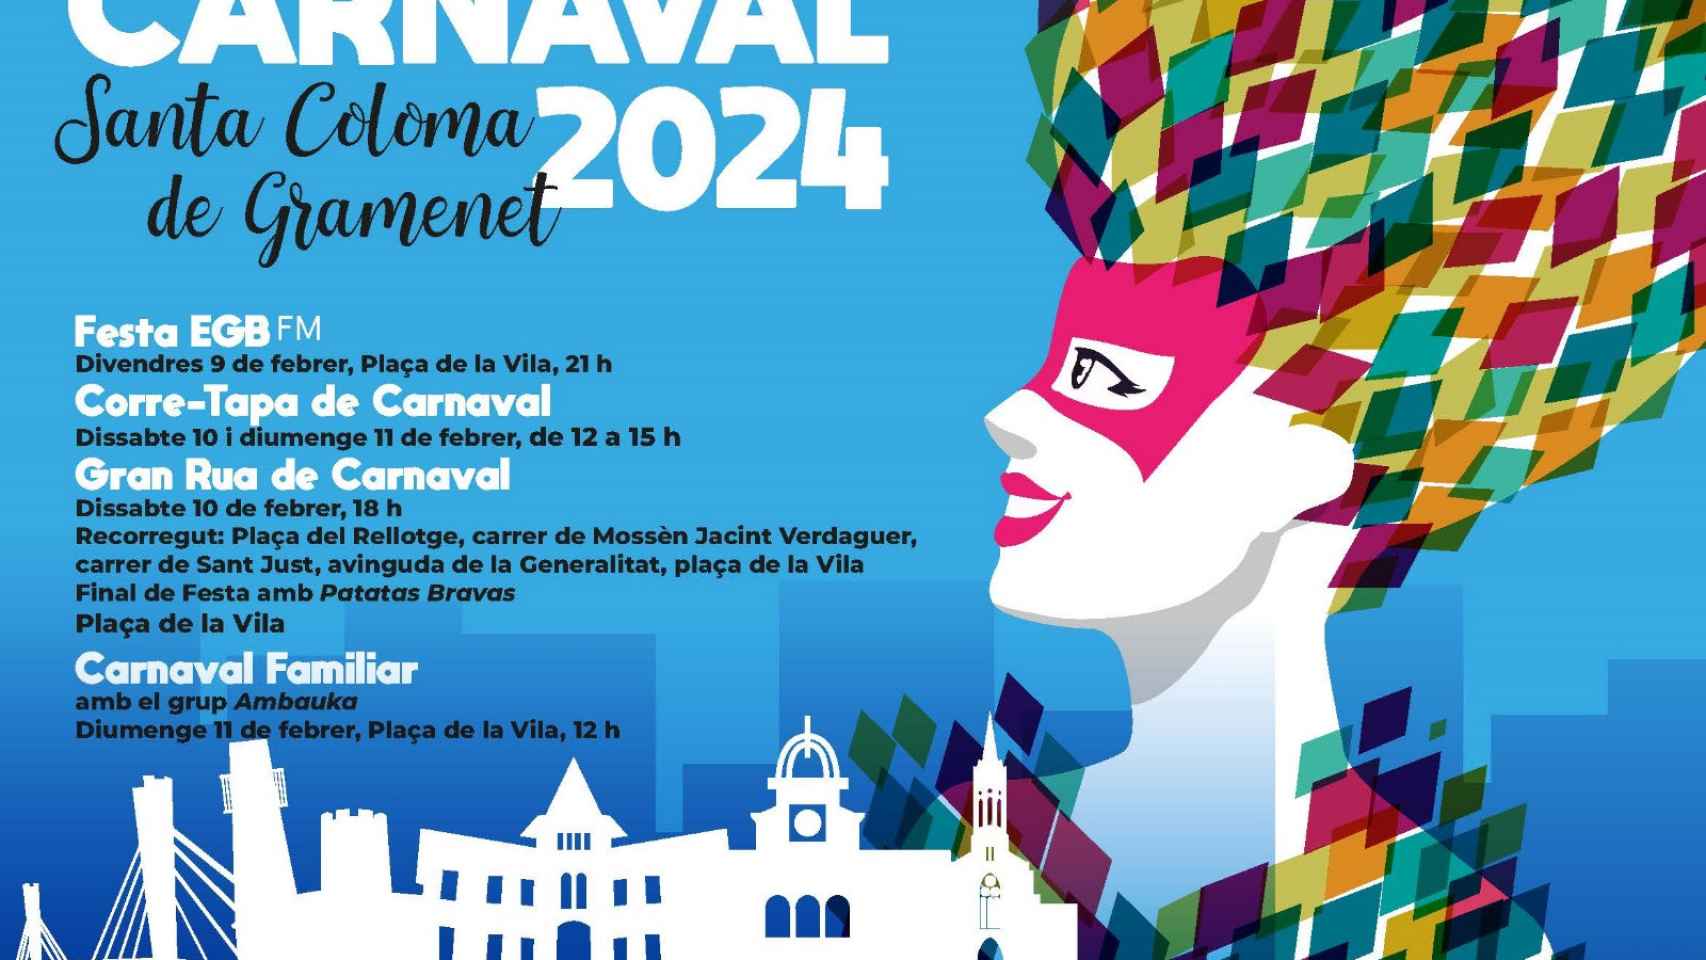 Cartel promocional del Carnaval en Santa Coloma